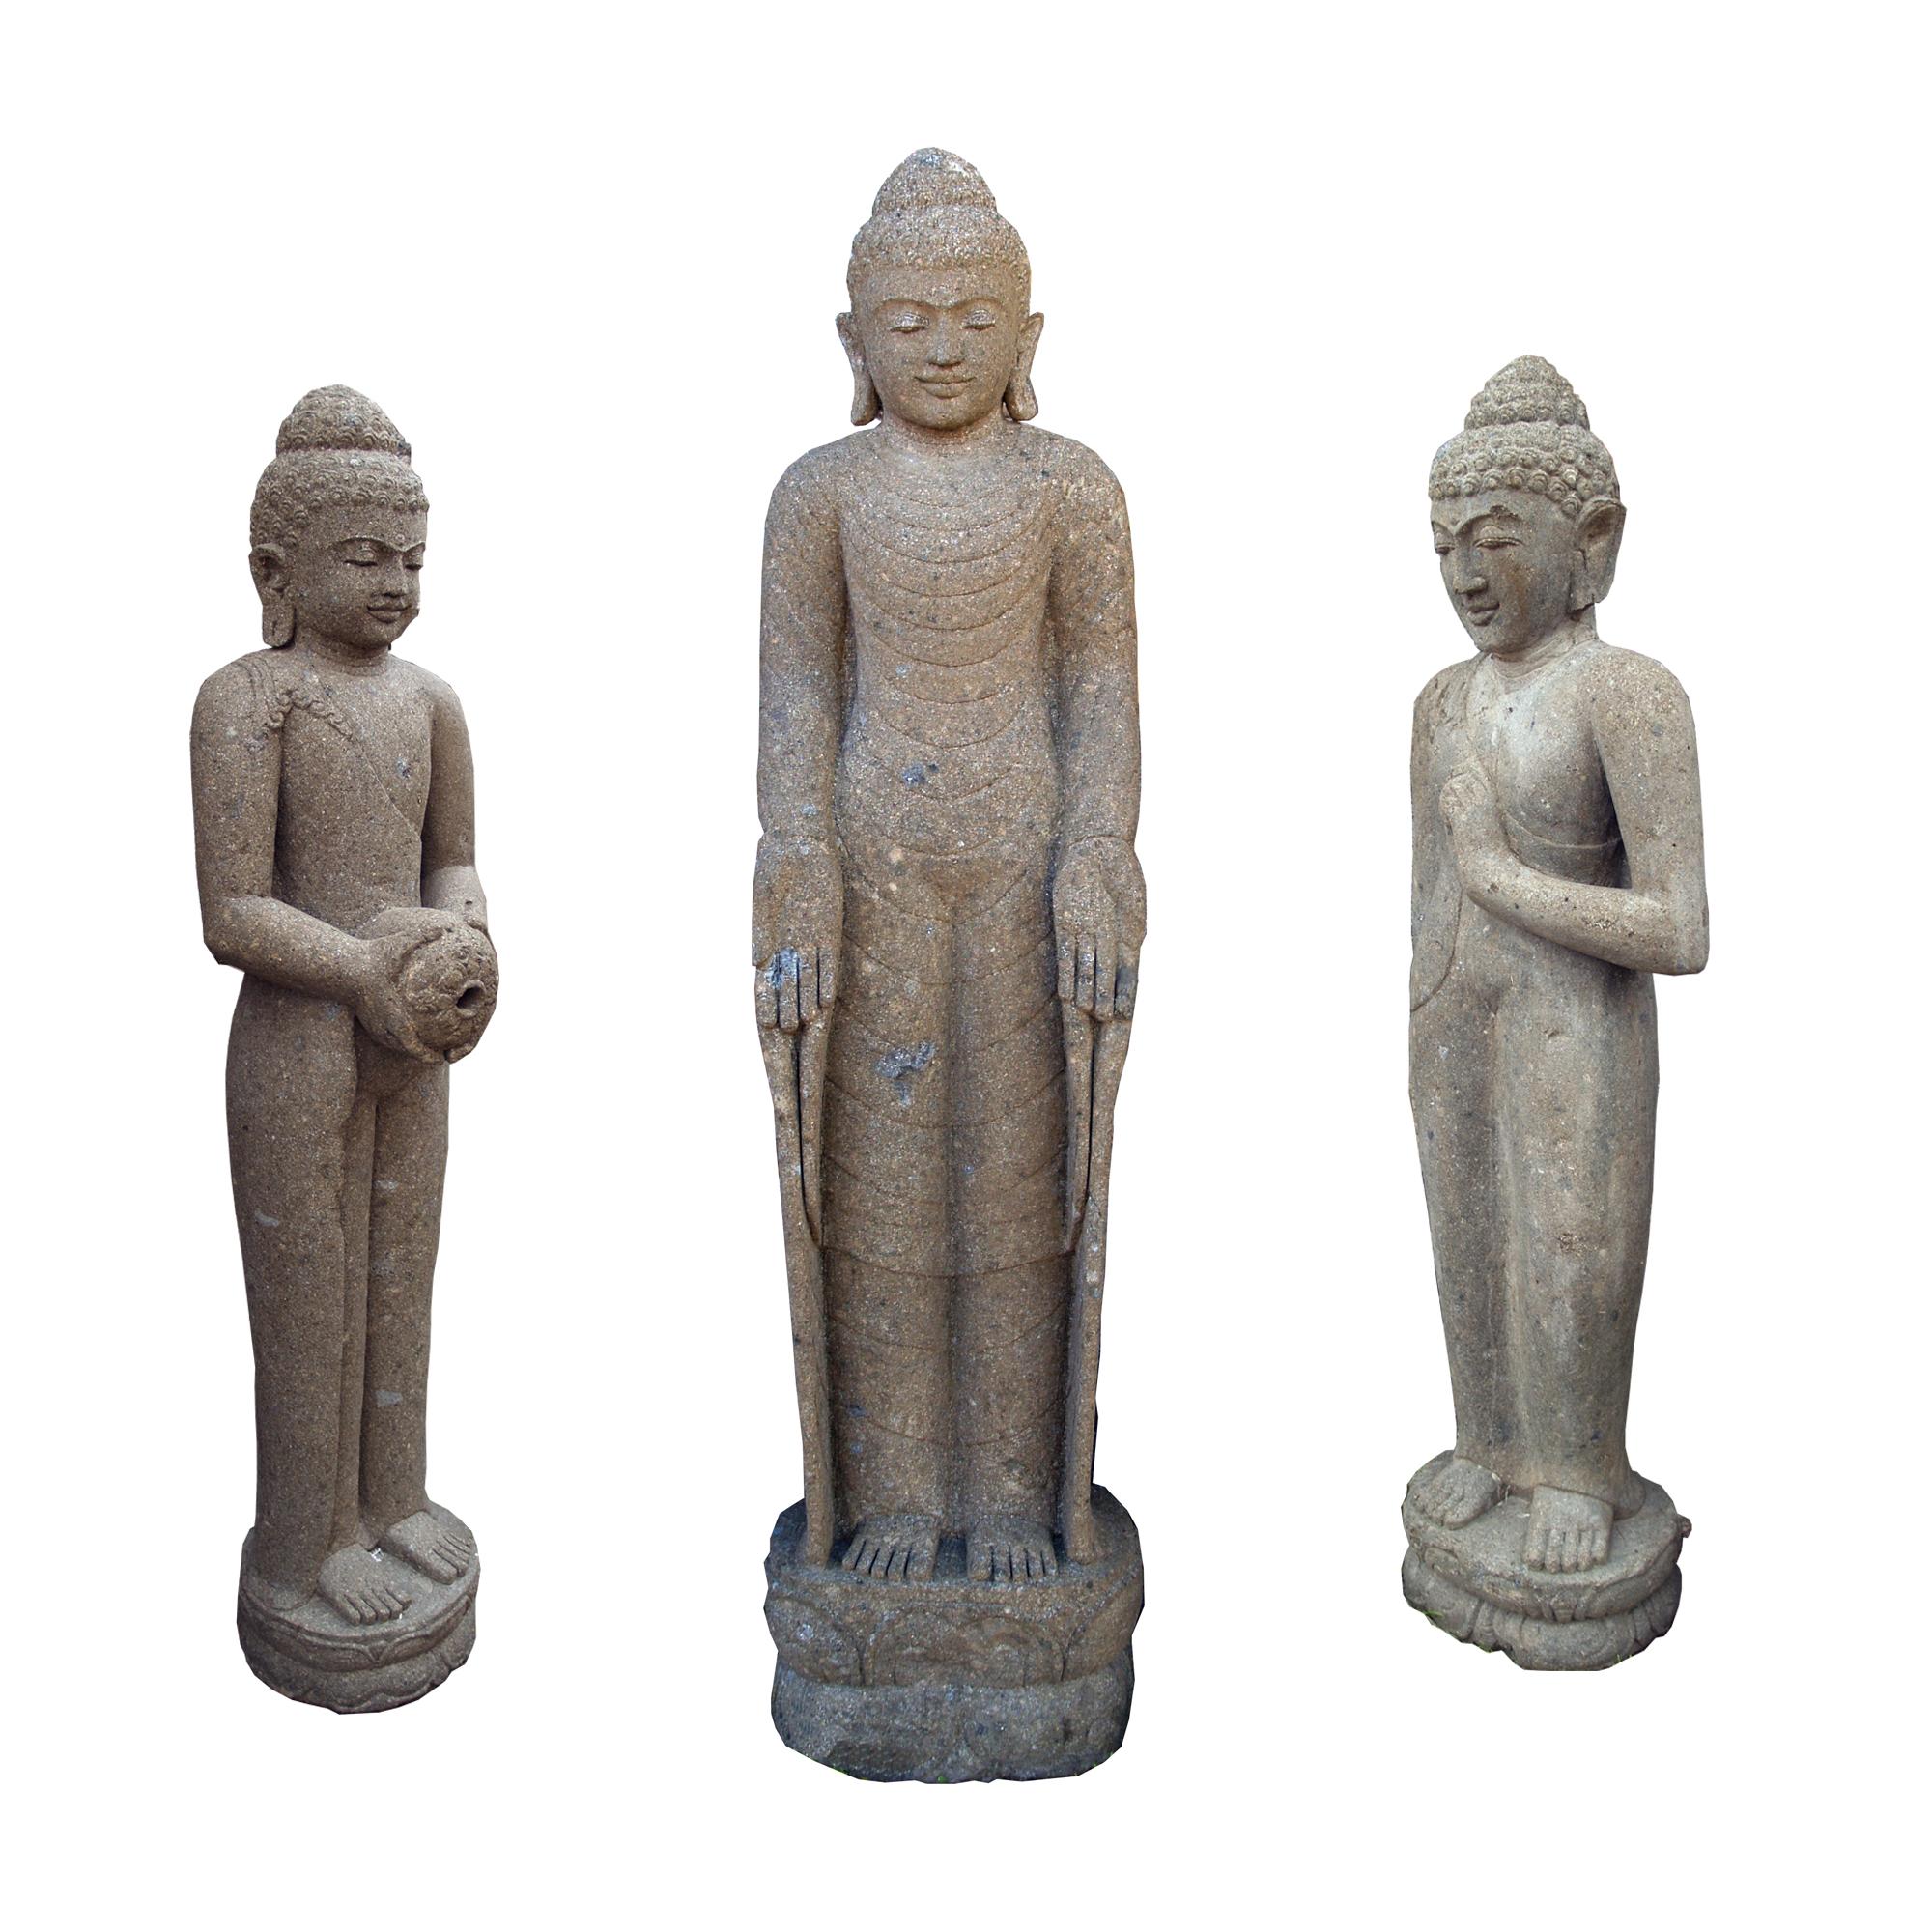 Buddha-Skulpturen aus Flussstein #buddha #gartendeko ©Guru-Shop